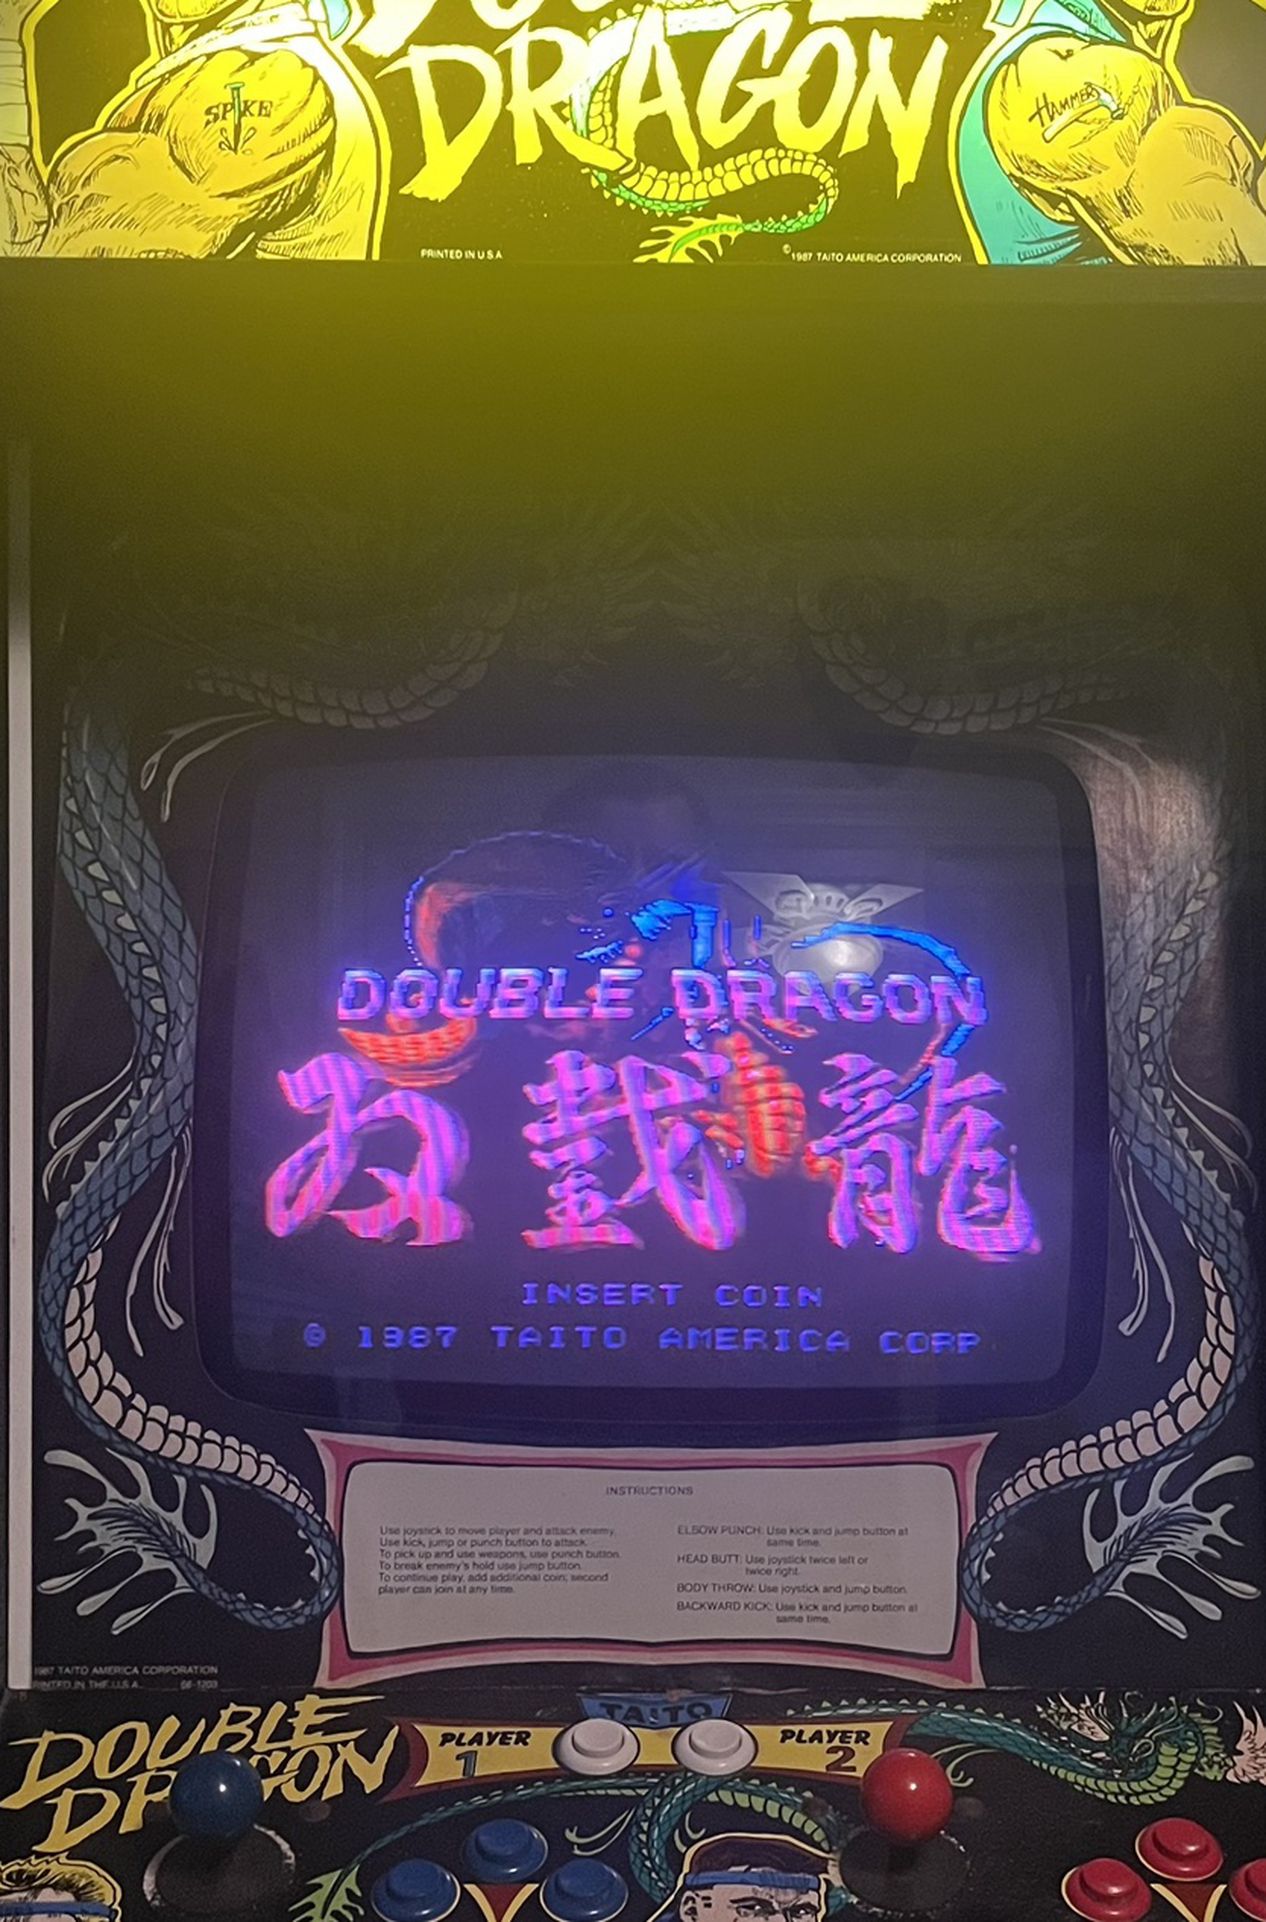 1987 Taito Classic Arcade Game Double Dragon